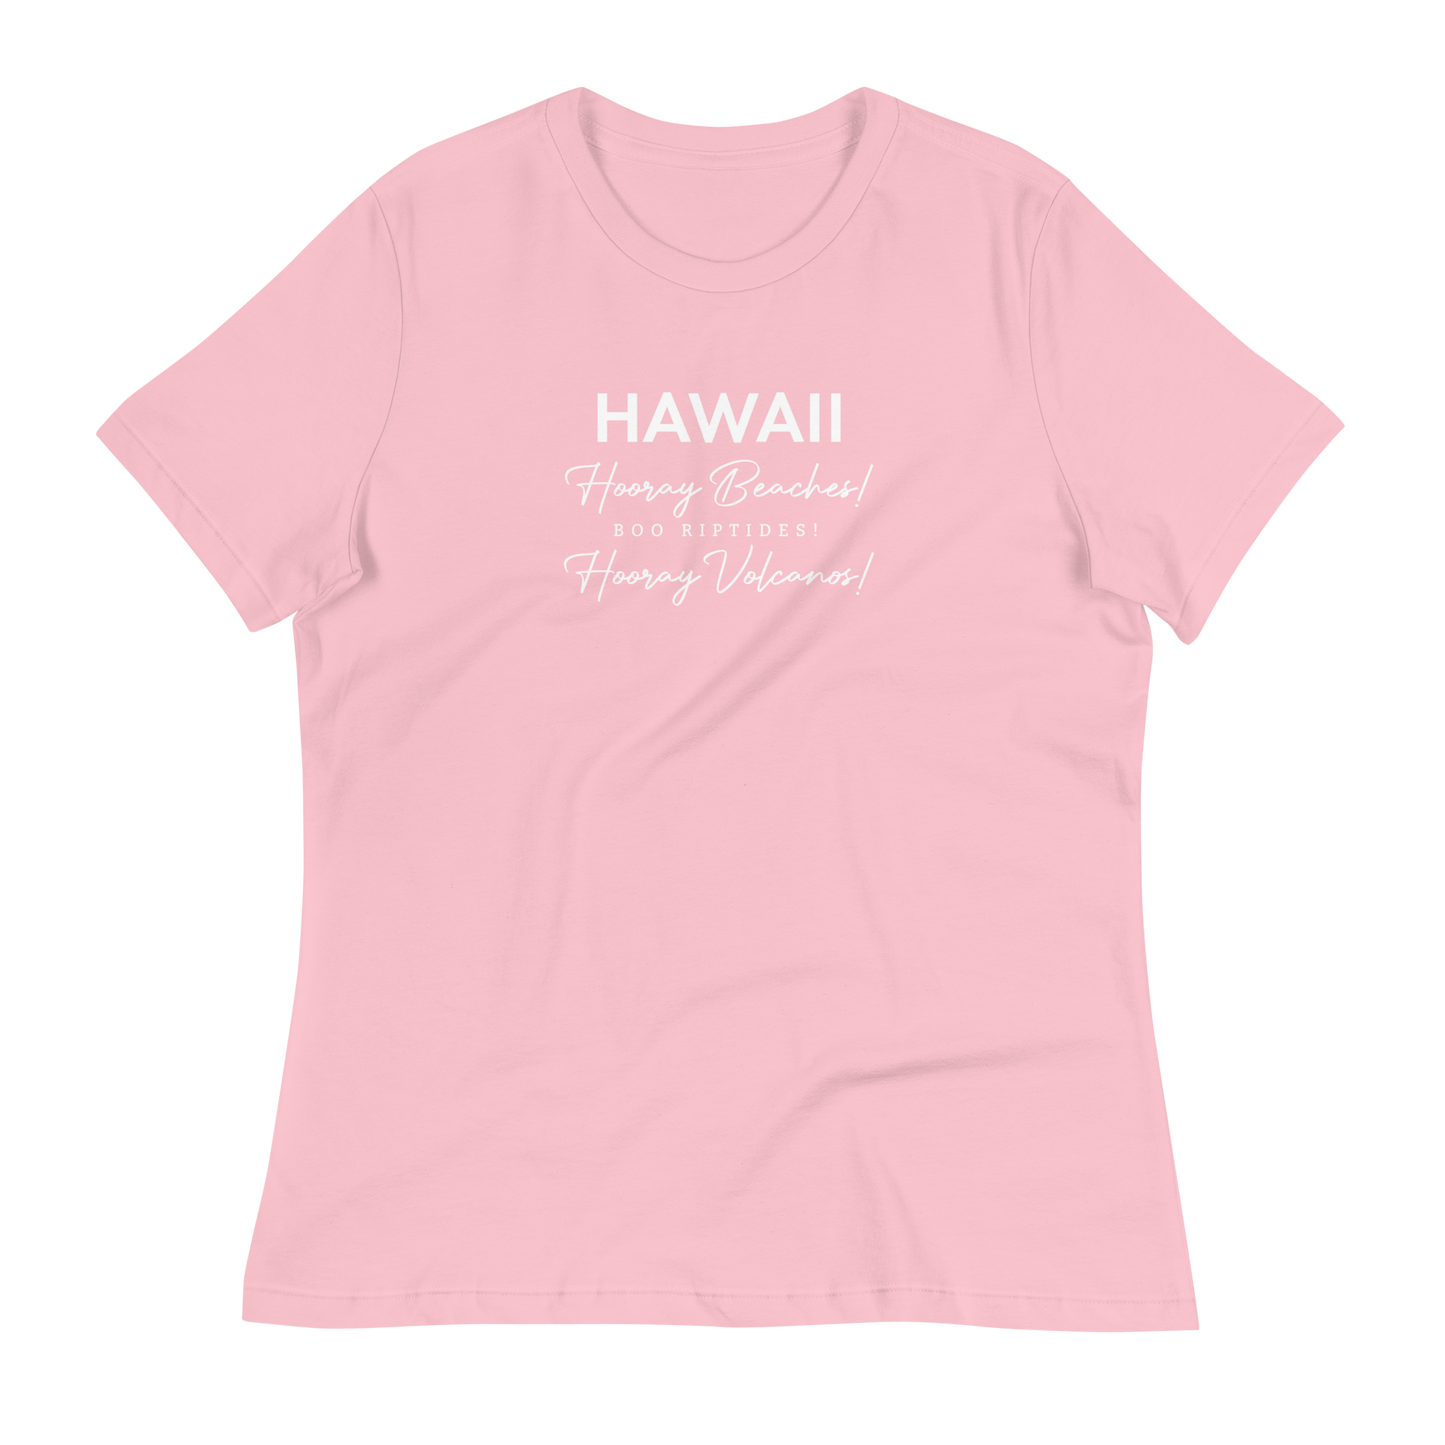 Women's - HAWAII - Hooray Beaches! Boo Riptides! Hooray Volcanos! Funny T-Shirt